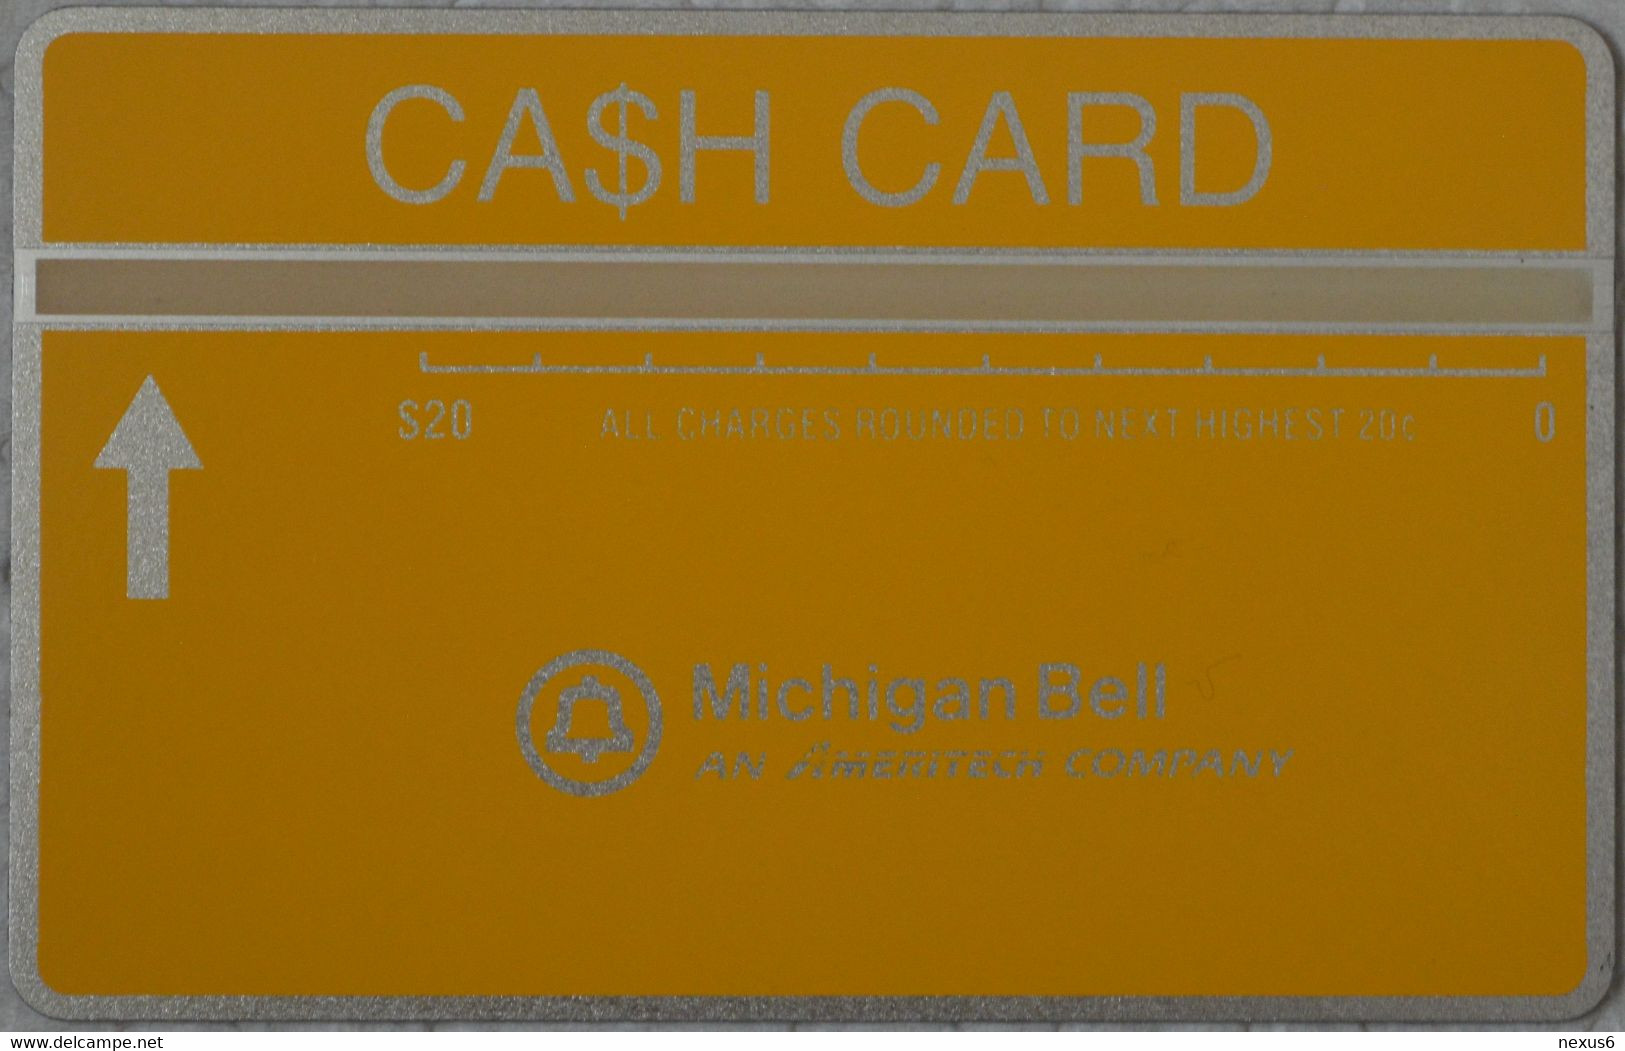 USA (Michigan Bell) - L&G - Cash Card Yellow, Cn. 710B - 10.1987, 20$, 2.500ex, Mint - [1] Hologramkaarten